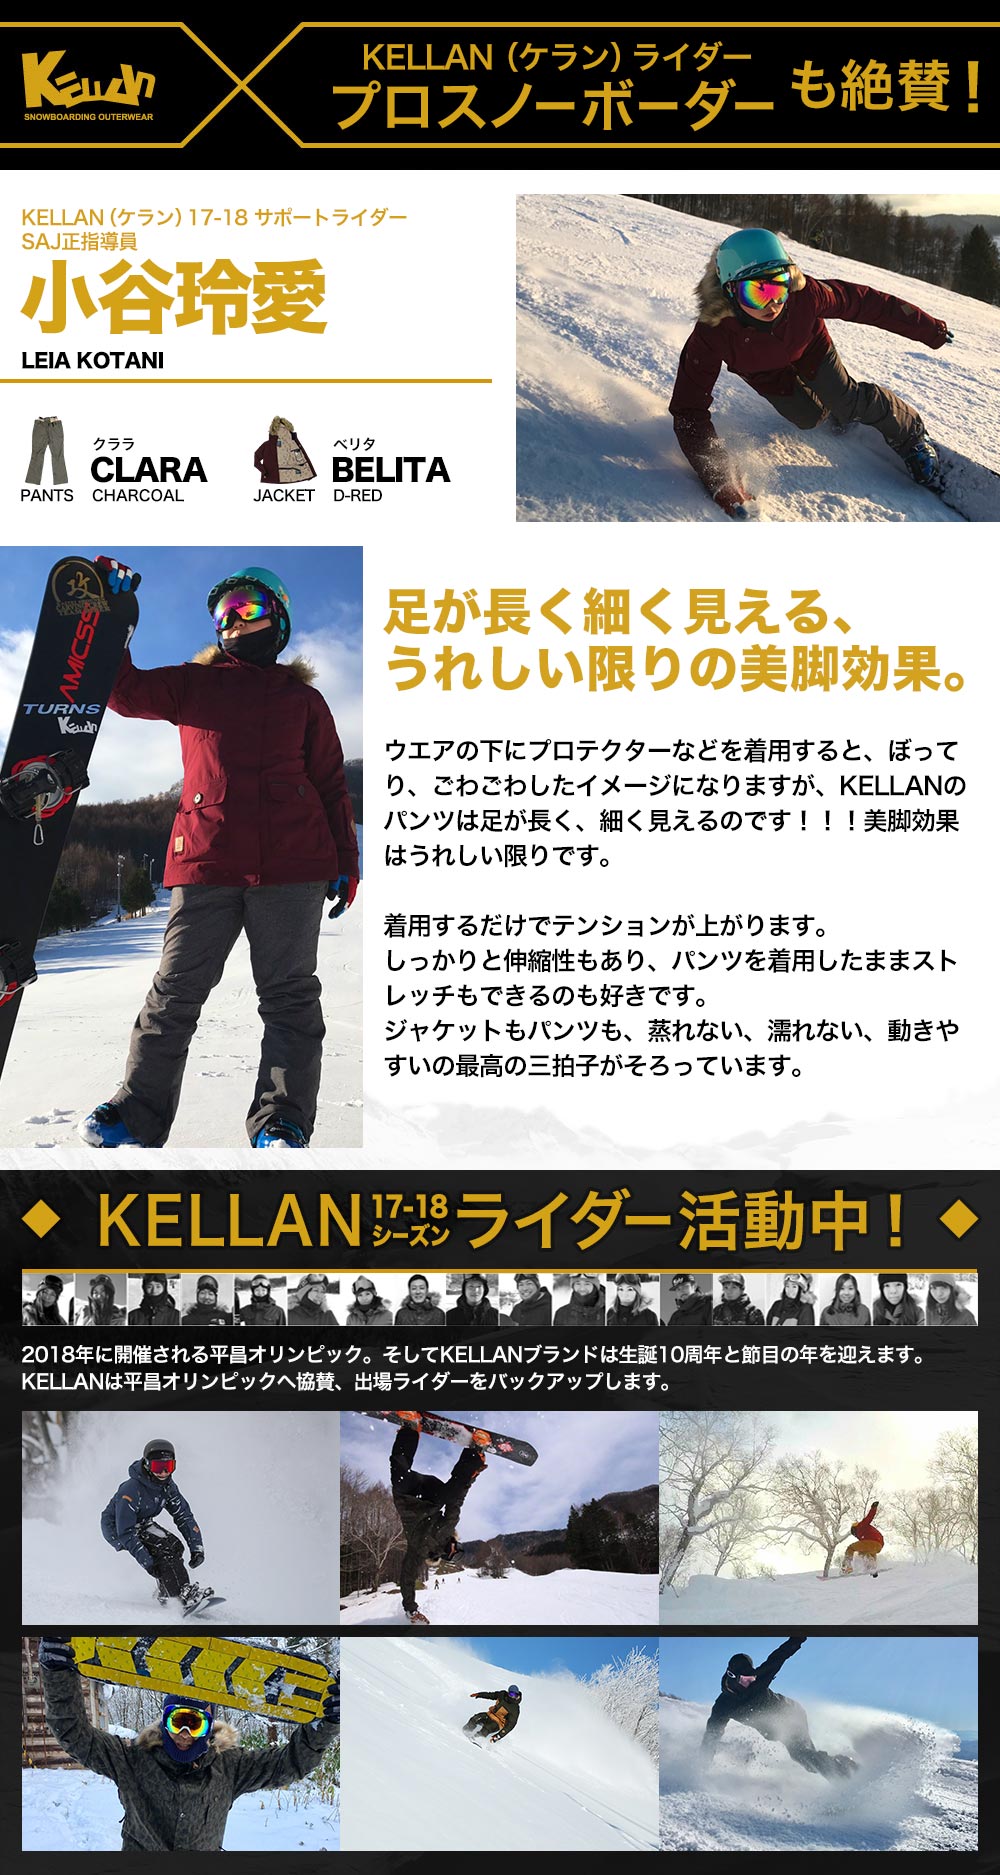 スノボ ウェア レディース ケラン クララパンツ スノーボードウェア スキーウェア 大きいサイズ 耐水圧 KELLAN CLARA PNT 10205 送料無料